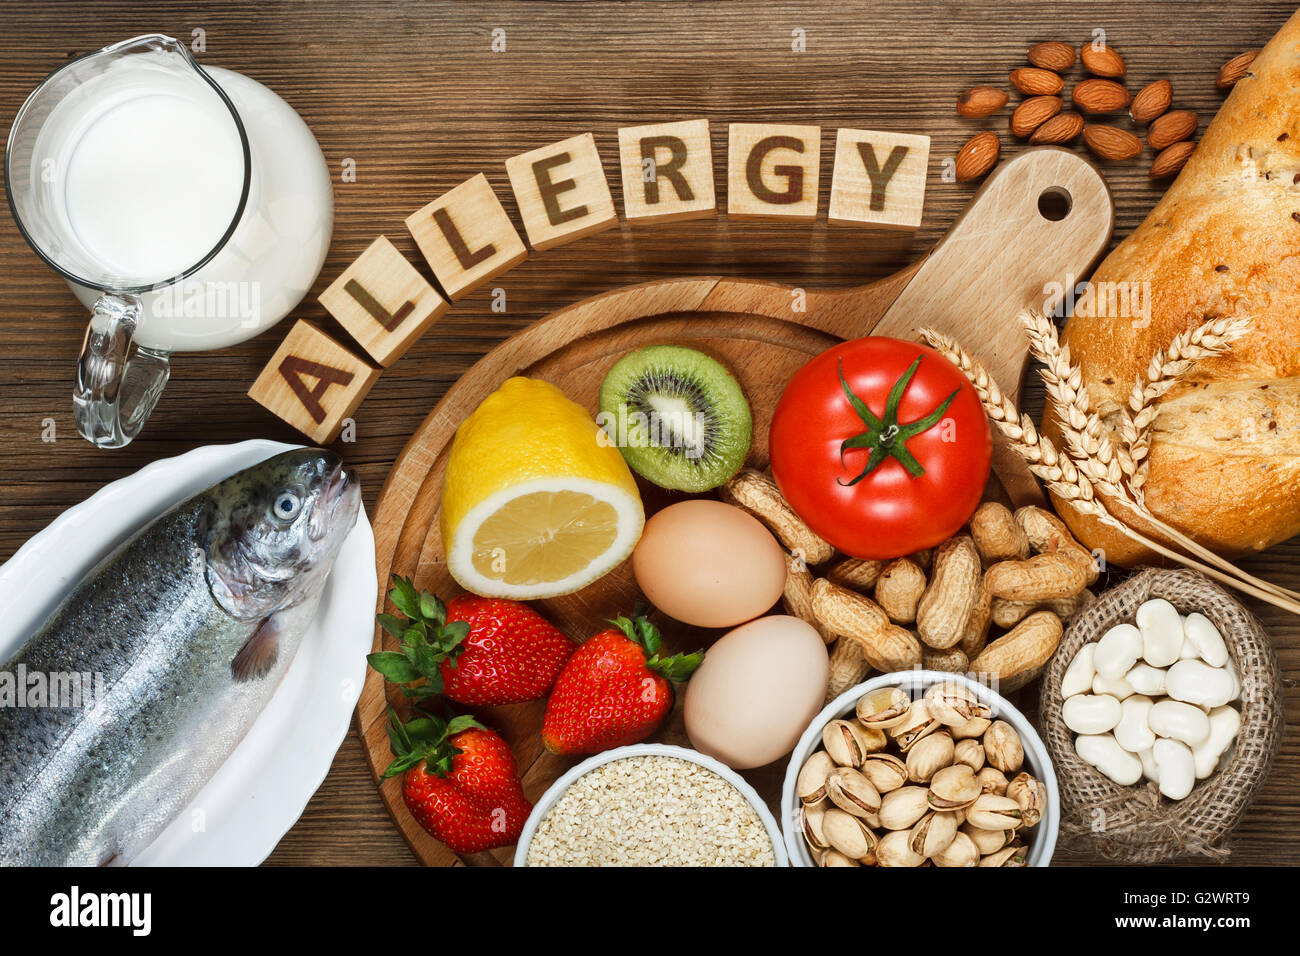 Allergie-Food-Konzept. Allergie-Lebensmittel wie Mandeln, Milch, Pistazien, Tomate, Zitrone, Kiwi, Forelle, Erdbeere, Brot, Sesam-Samen, zB Stockfoto